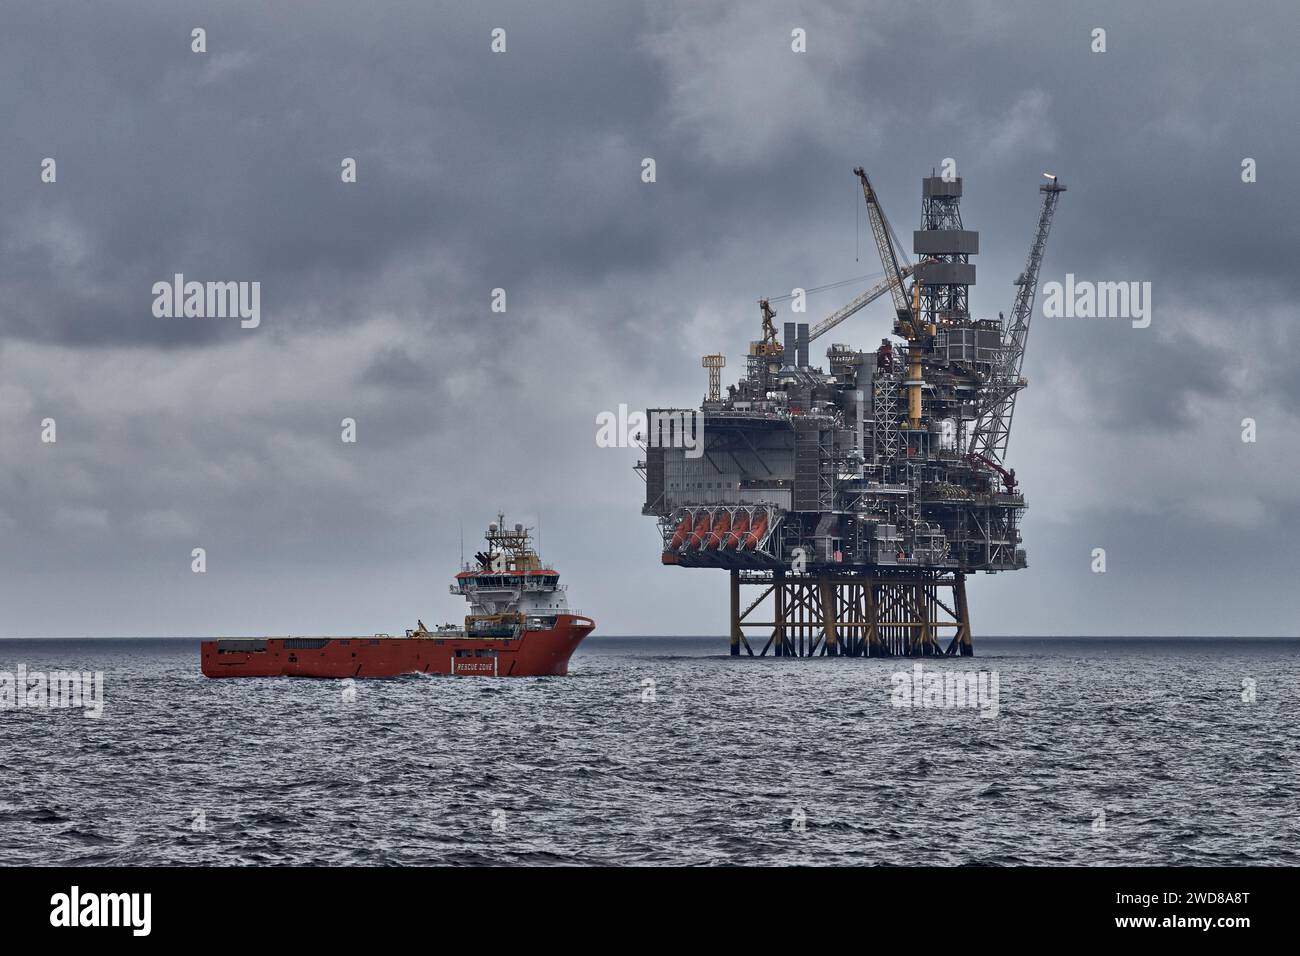 Panoramablick auf die Jack Up Bohranlage und das Versorgungsschiff an einem dunklen bewölkten Tag im Meer. Erdöl- und Erdgasindustrie in der Nordsee. Stockfoto